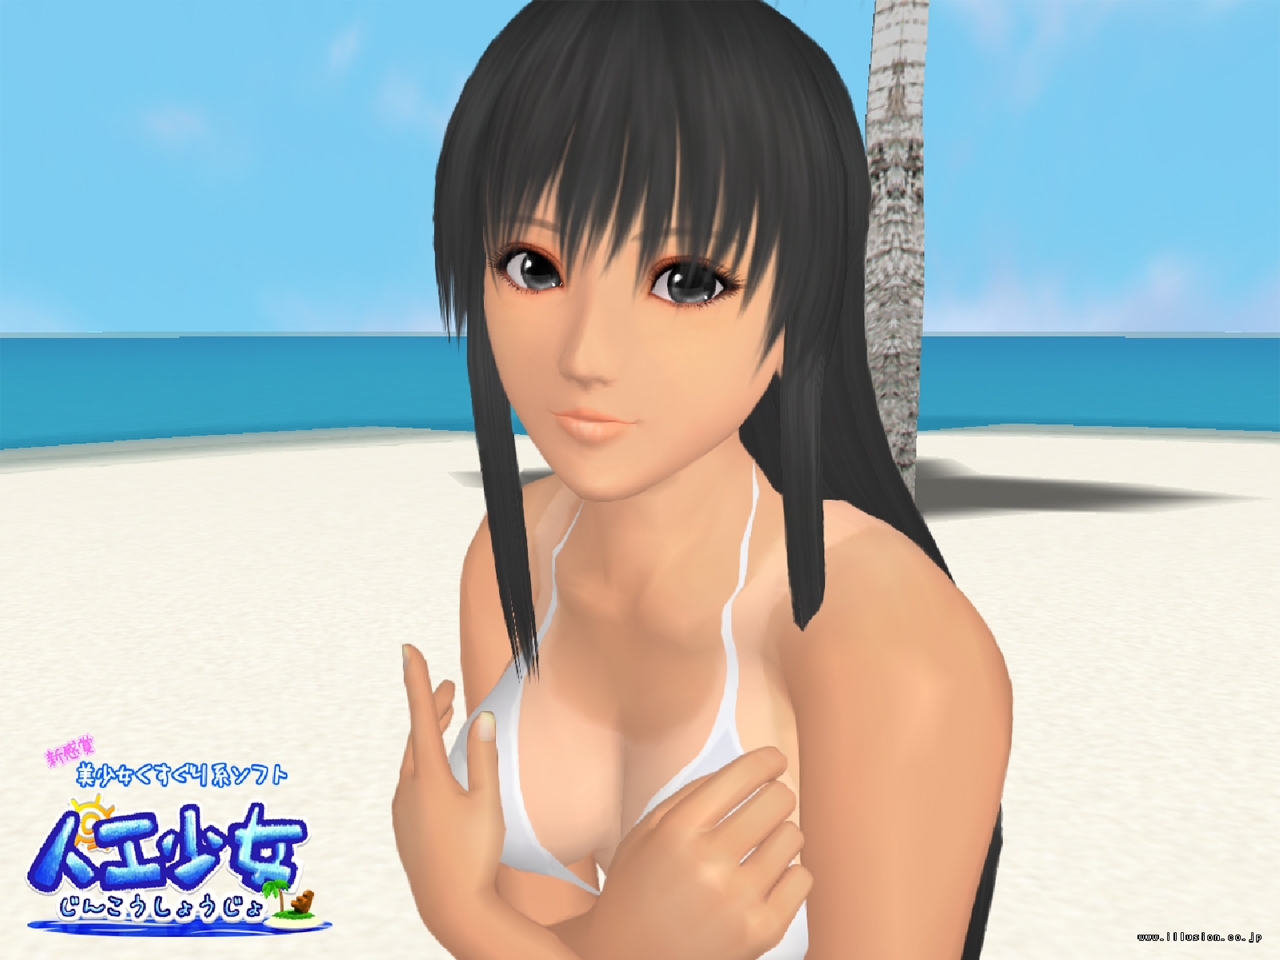 Смотреть скриншот из игры Sexy Beach 3 под номером 11. 